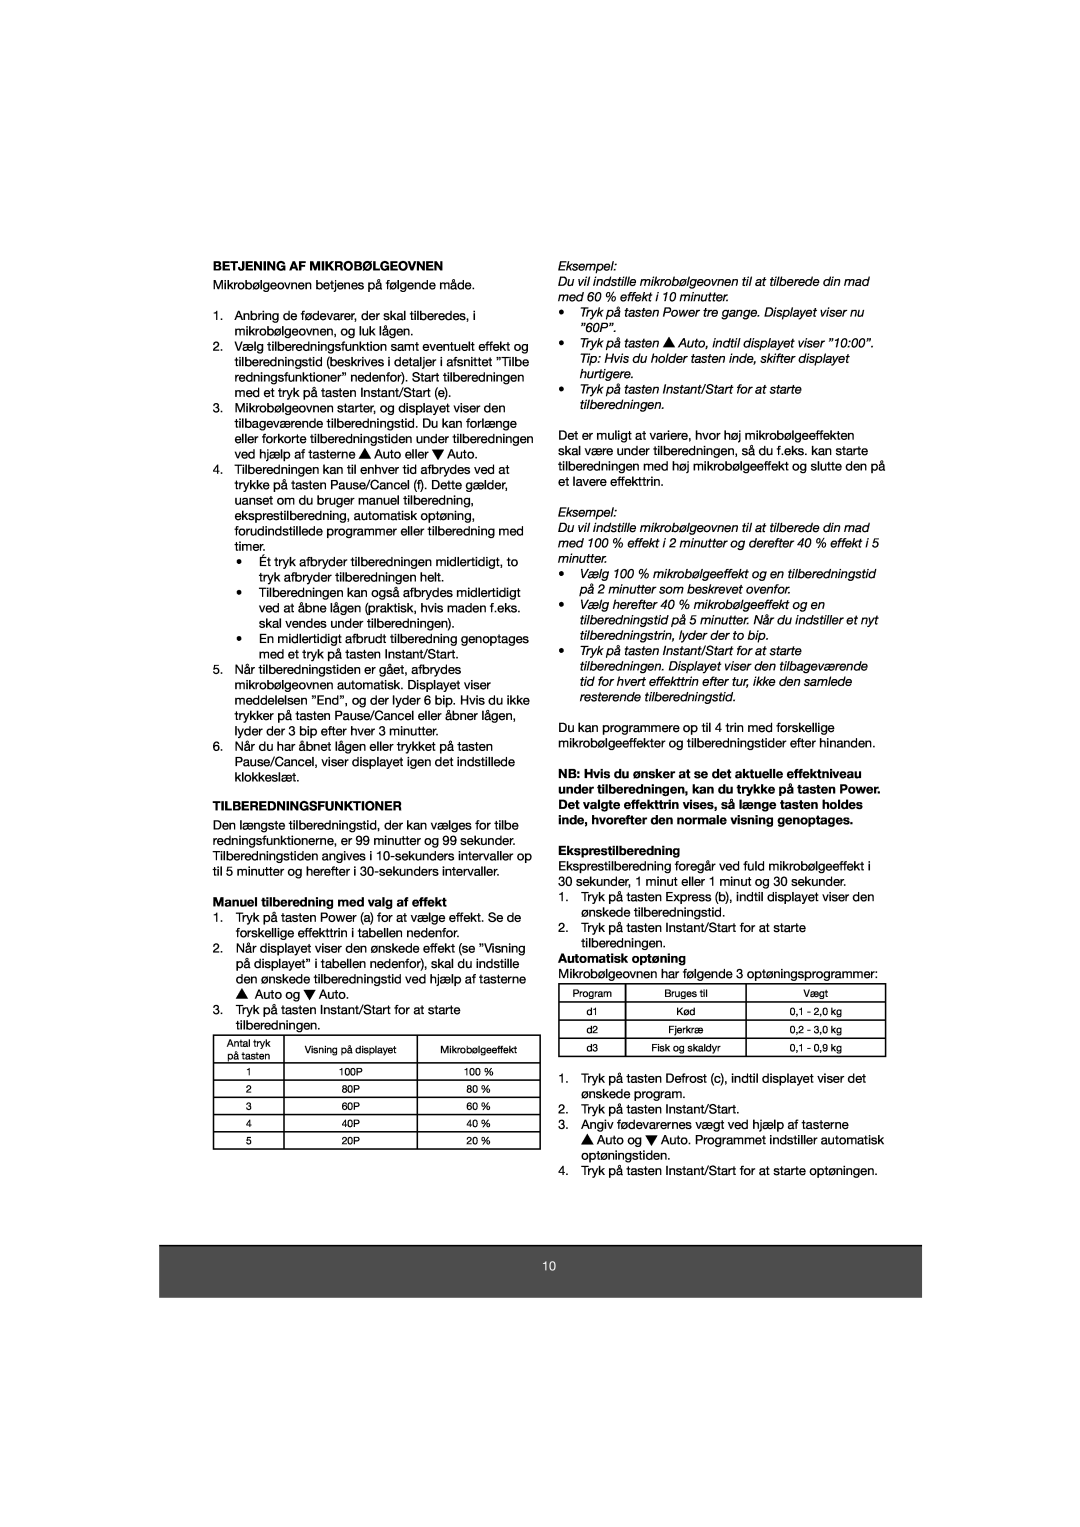 Melissa 653-081 manual Betjening Af Mikrobølgeovnen, Tilberedningsfunktioner, Manuel tilberedning med valg af effekt 